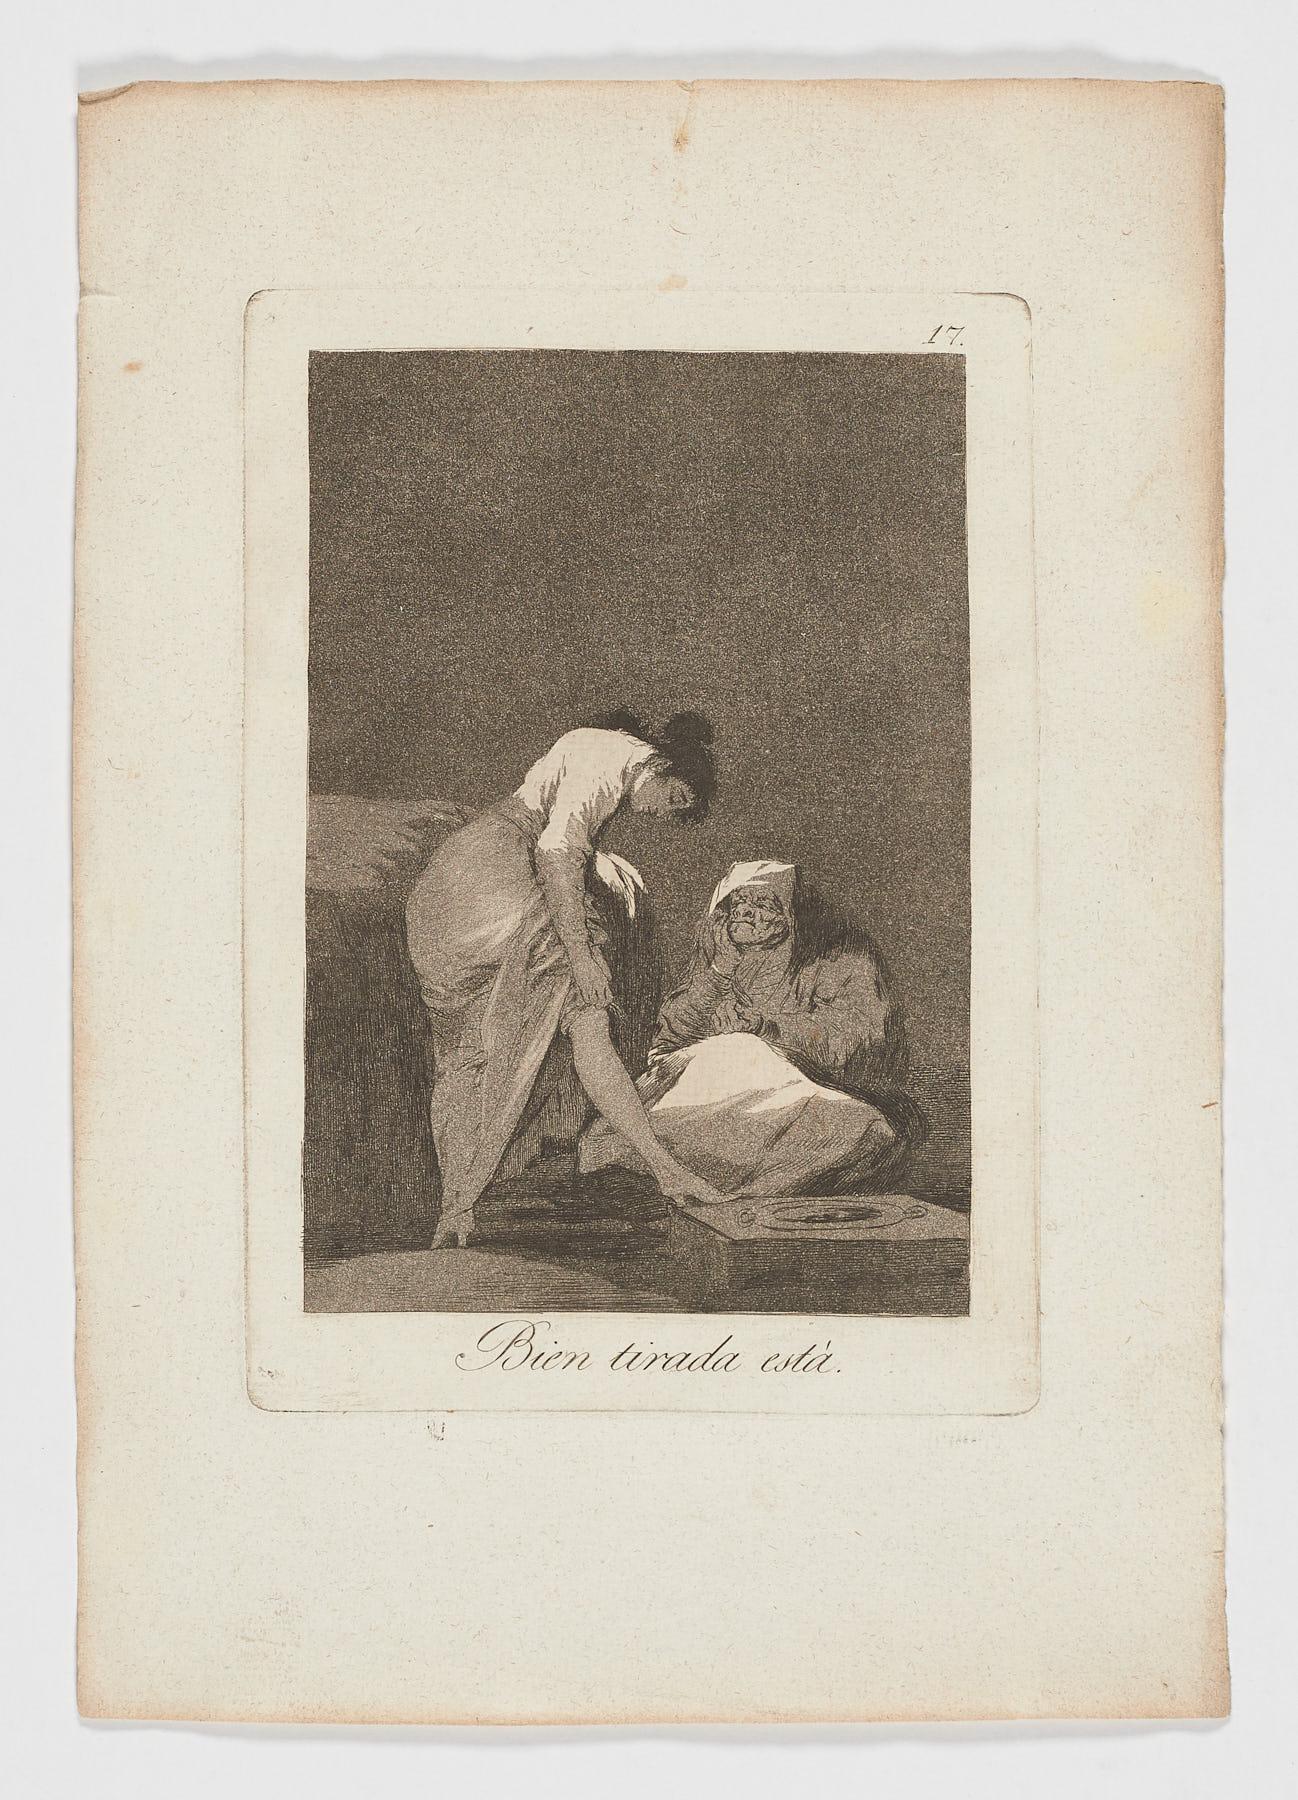 Francisco Goya Figurative Print - Francisco De Goya Caprichos Bien tirada esta 1st edition original art print 